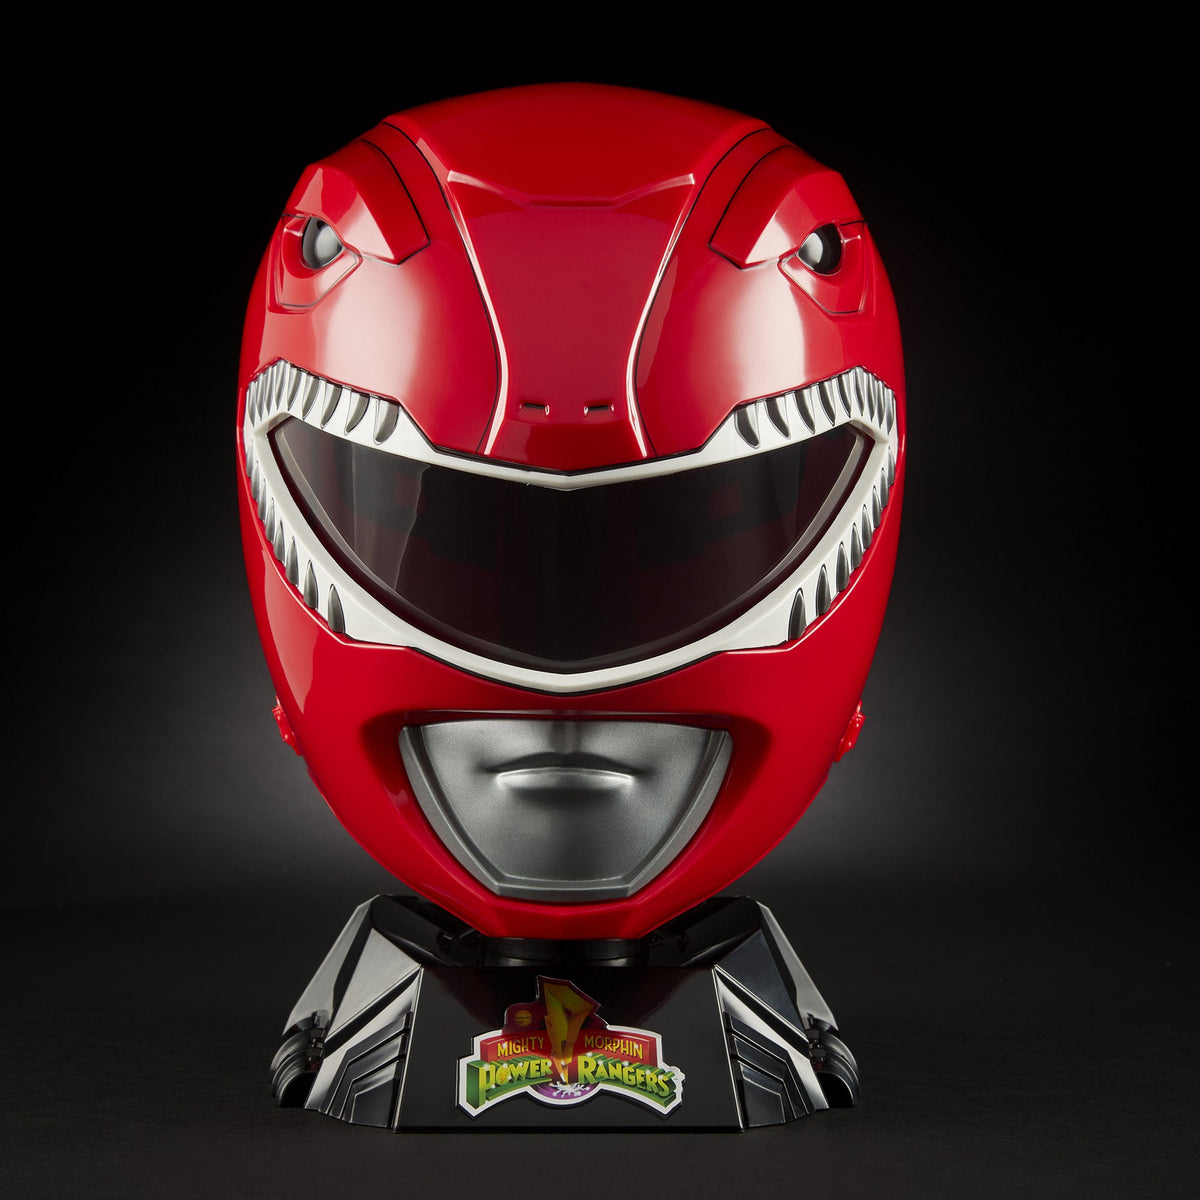 (IN STOCK) Hasbro - Power Rangers Lightning Collection - Mighty Morphin Red Ranger Premium Helmet (Reissue) - Marvelous Toys